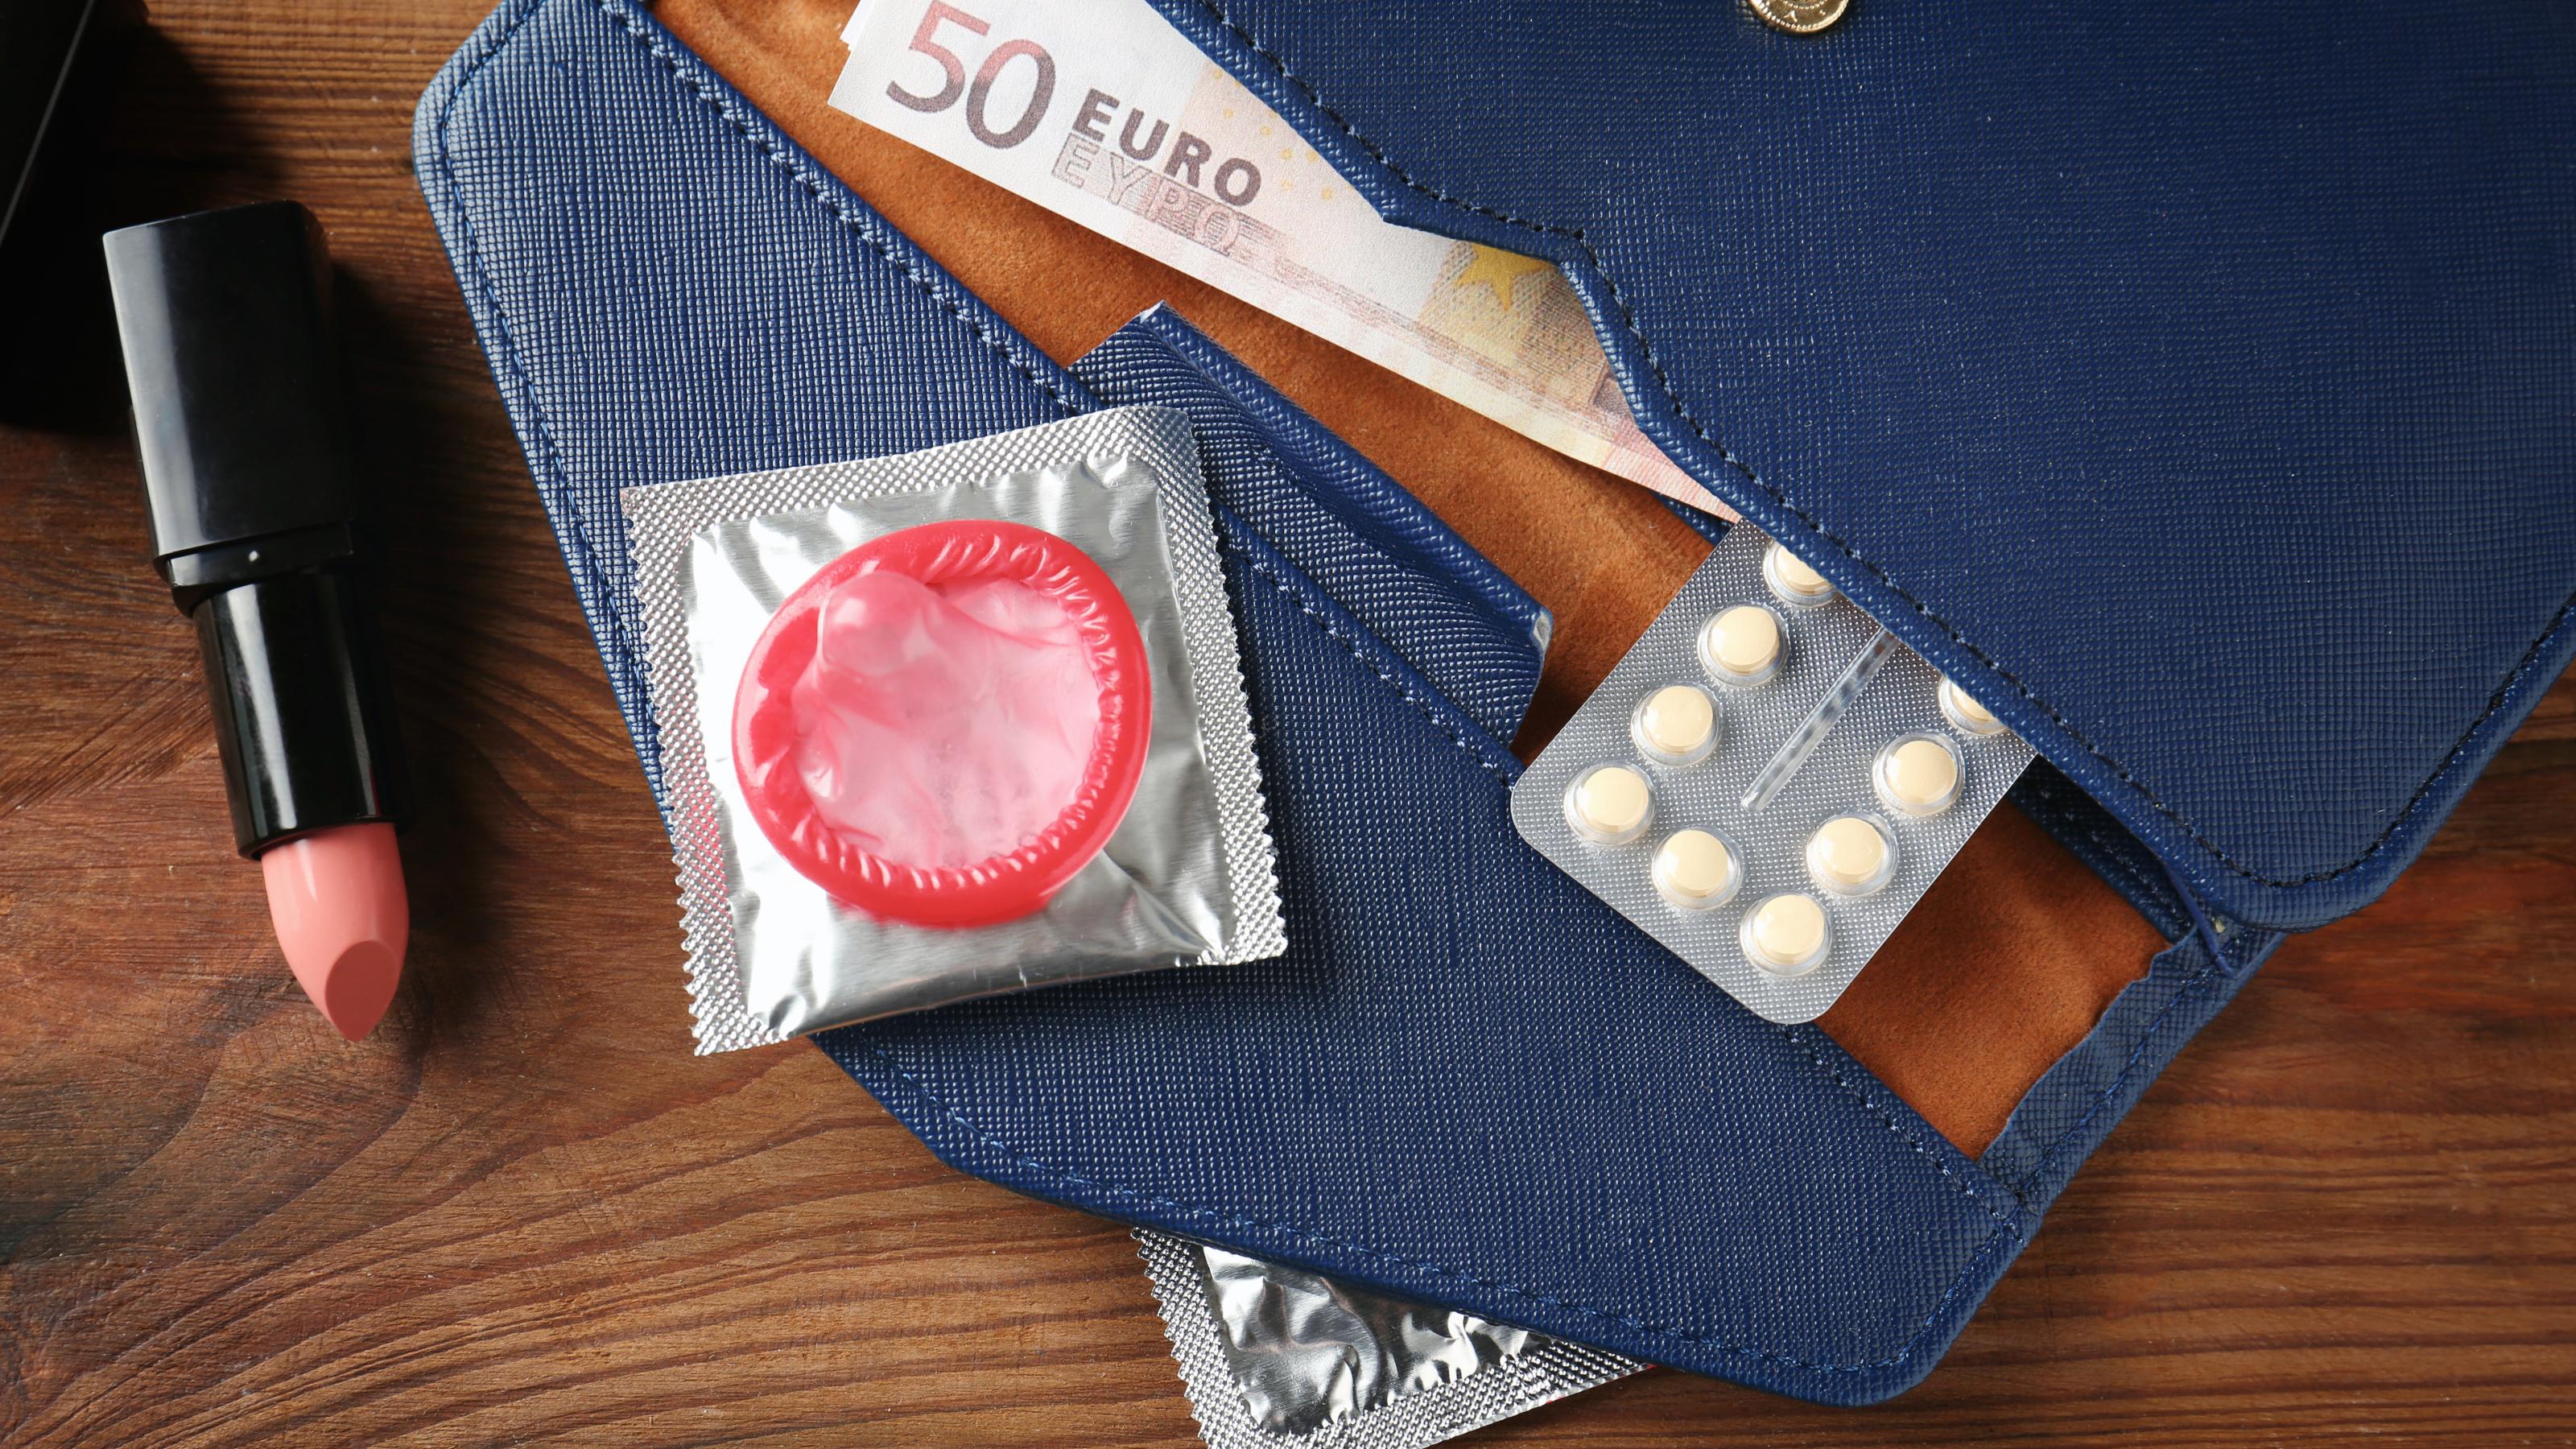 In einer geöffneten Geldbörse sind ein Geldschein, ein Kondom und eine Packung der Pille zu sehen.